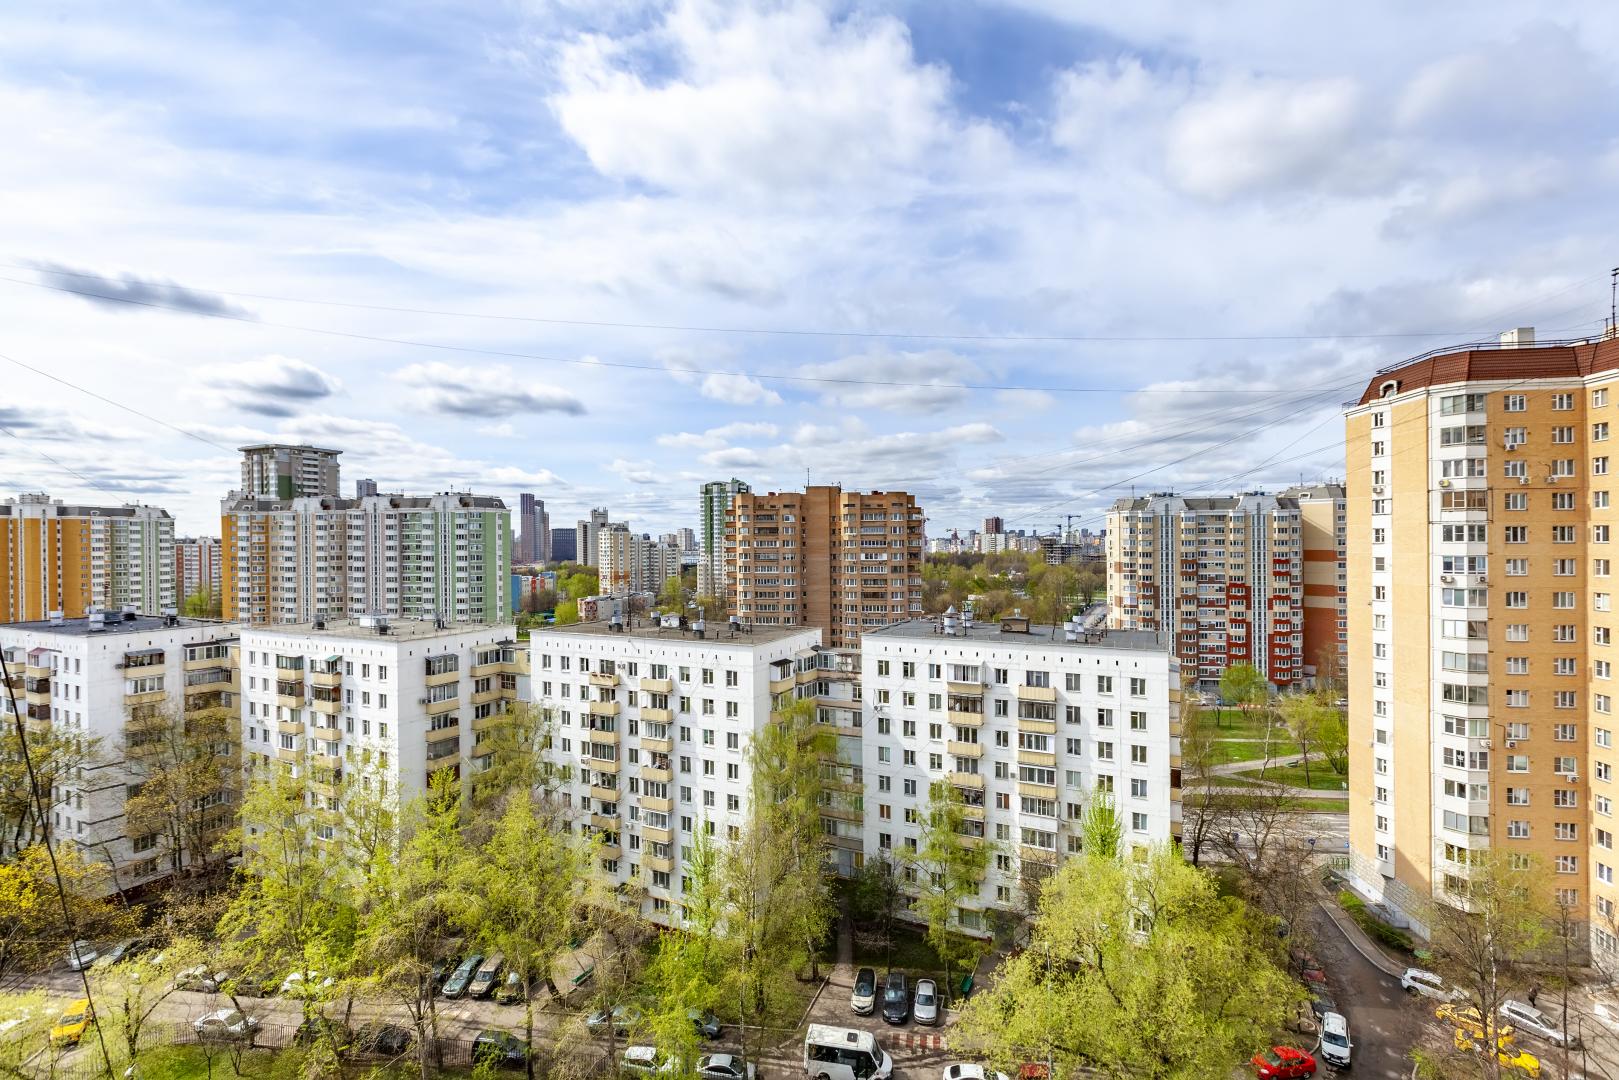 Продам квартиру в Москве по адресу Бескудниковский бульвар, 32к6, площадь 782 квм Недвижимость Москва (Россия) , жил